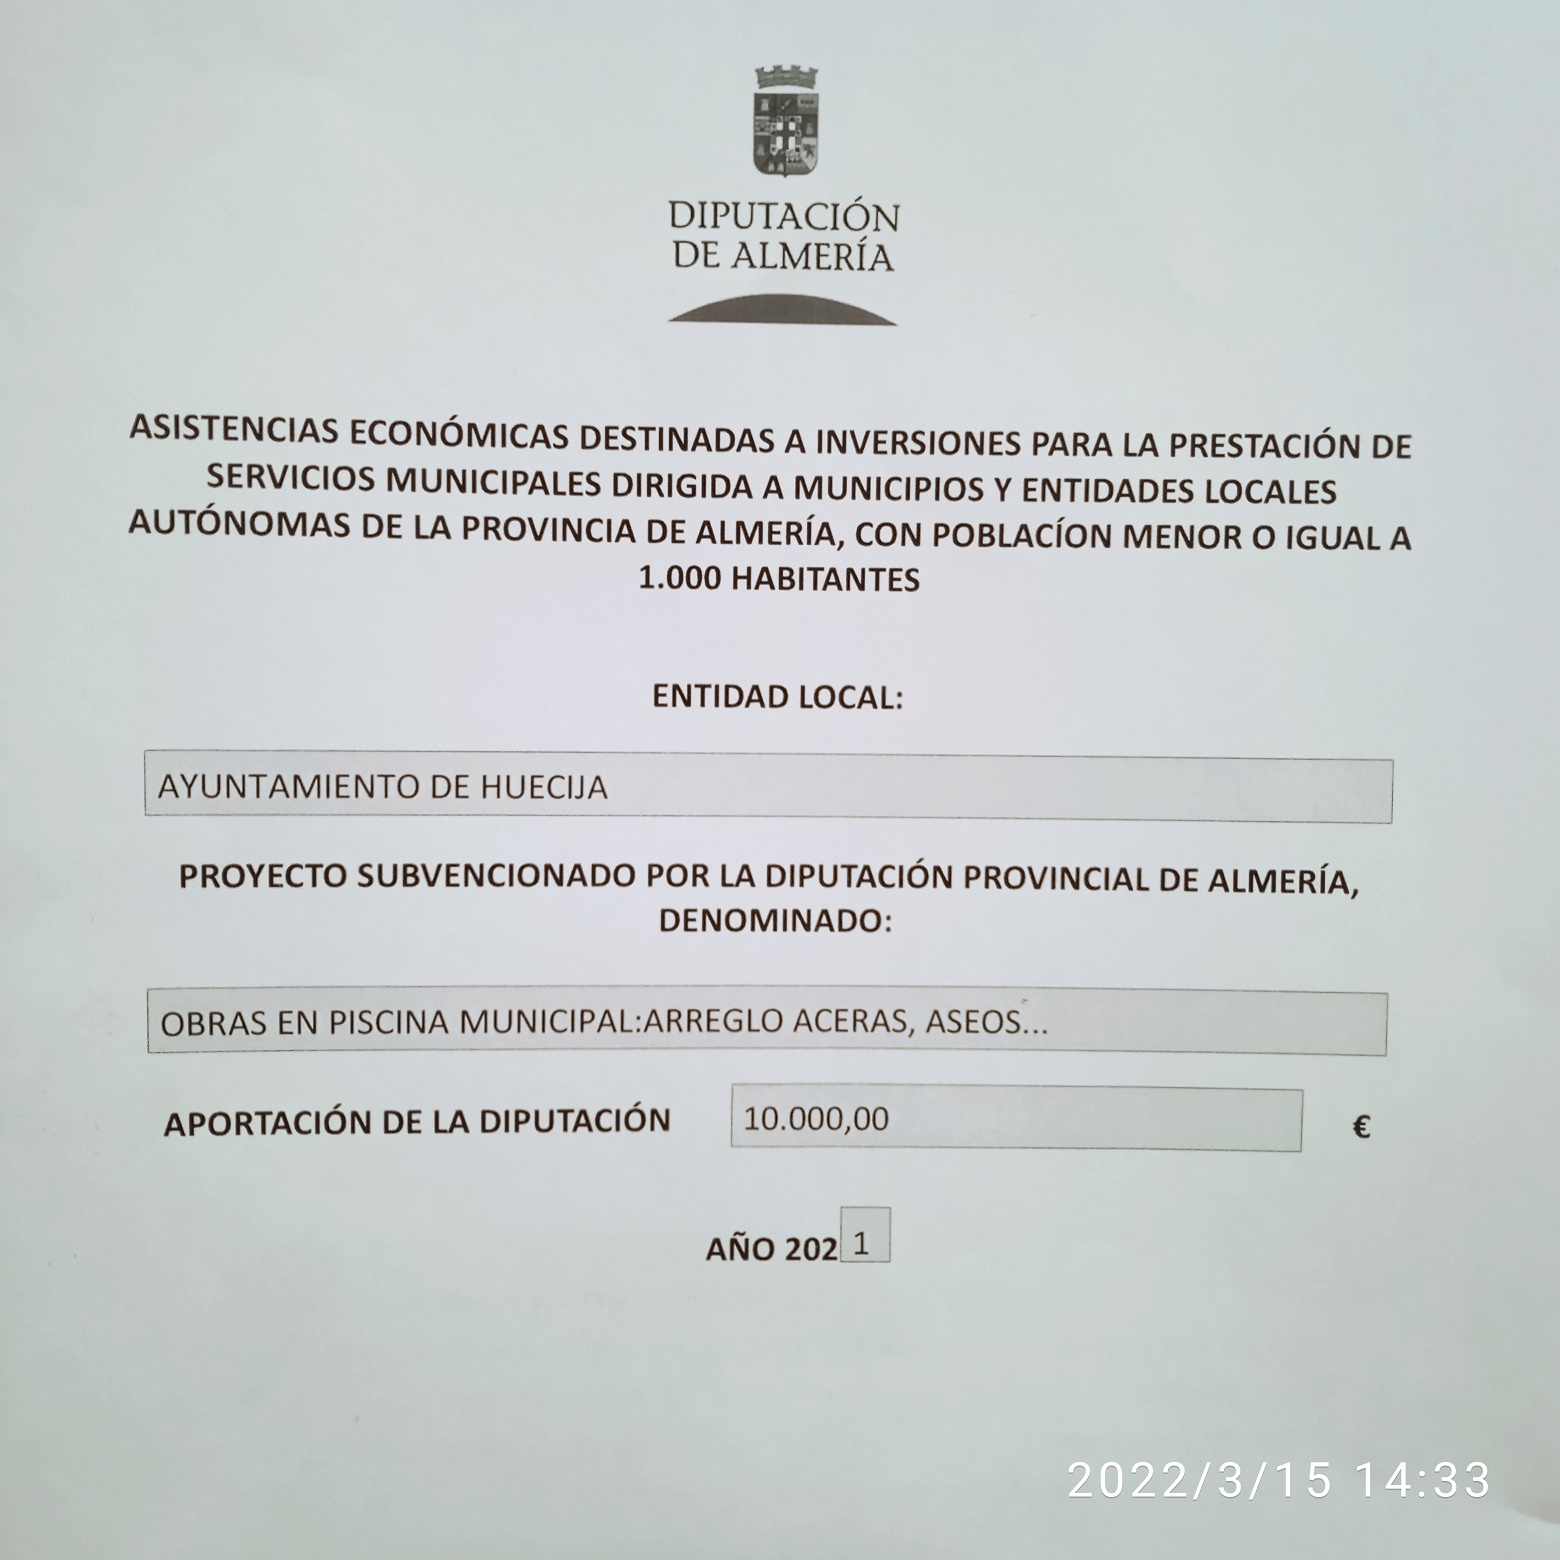 ASISTENCIA ECONOMICA DE LA EXCMA. DIPUTACION DE ALMERIA DESTINADA A INVERSIONES PARA PRESTACION DE SERVICIOS MUNICIPALES